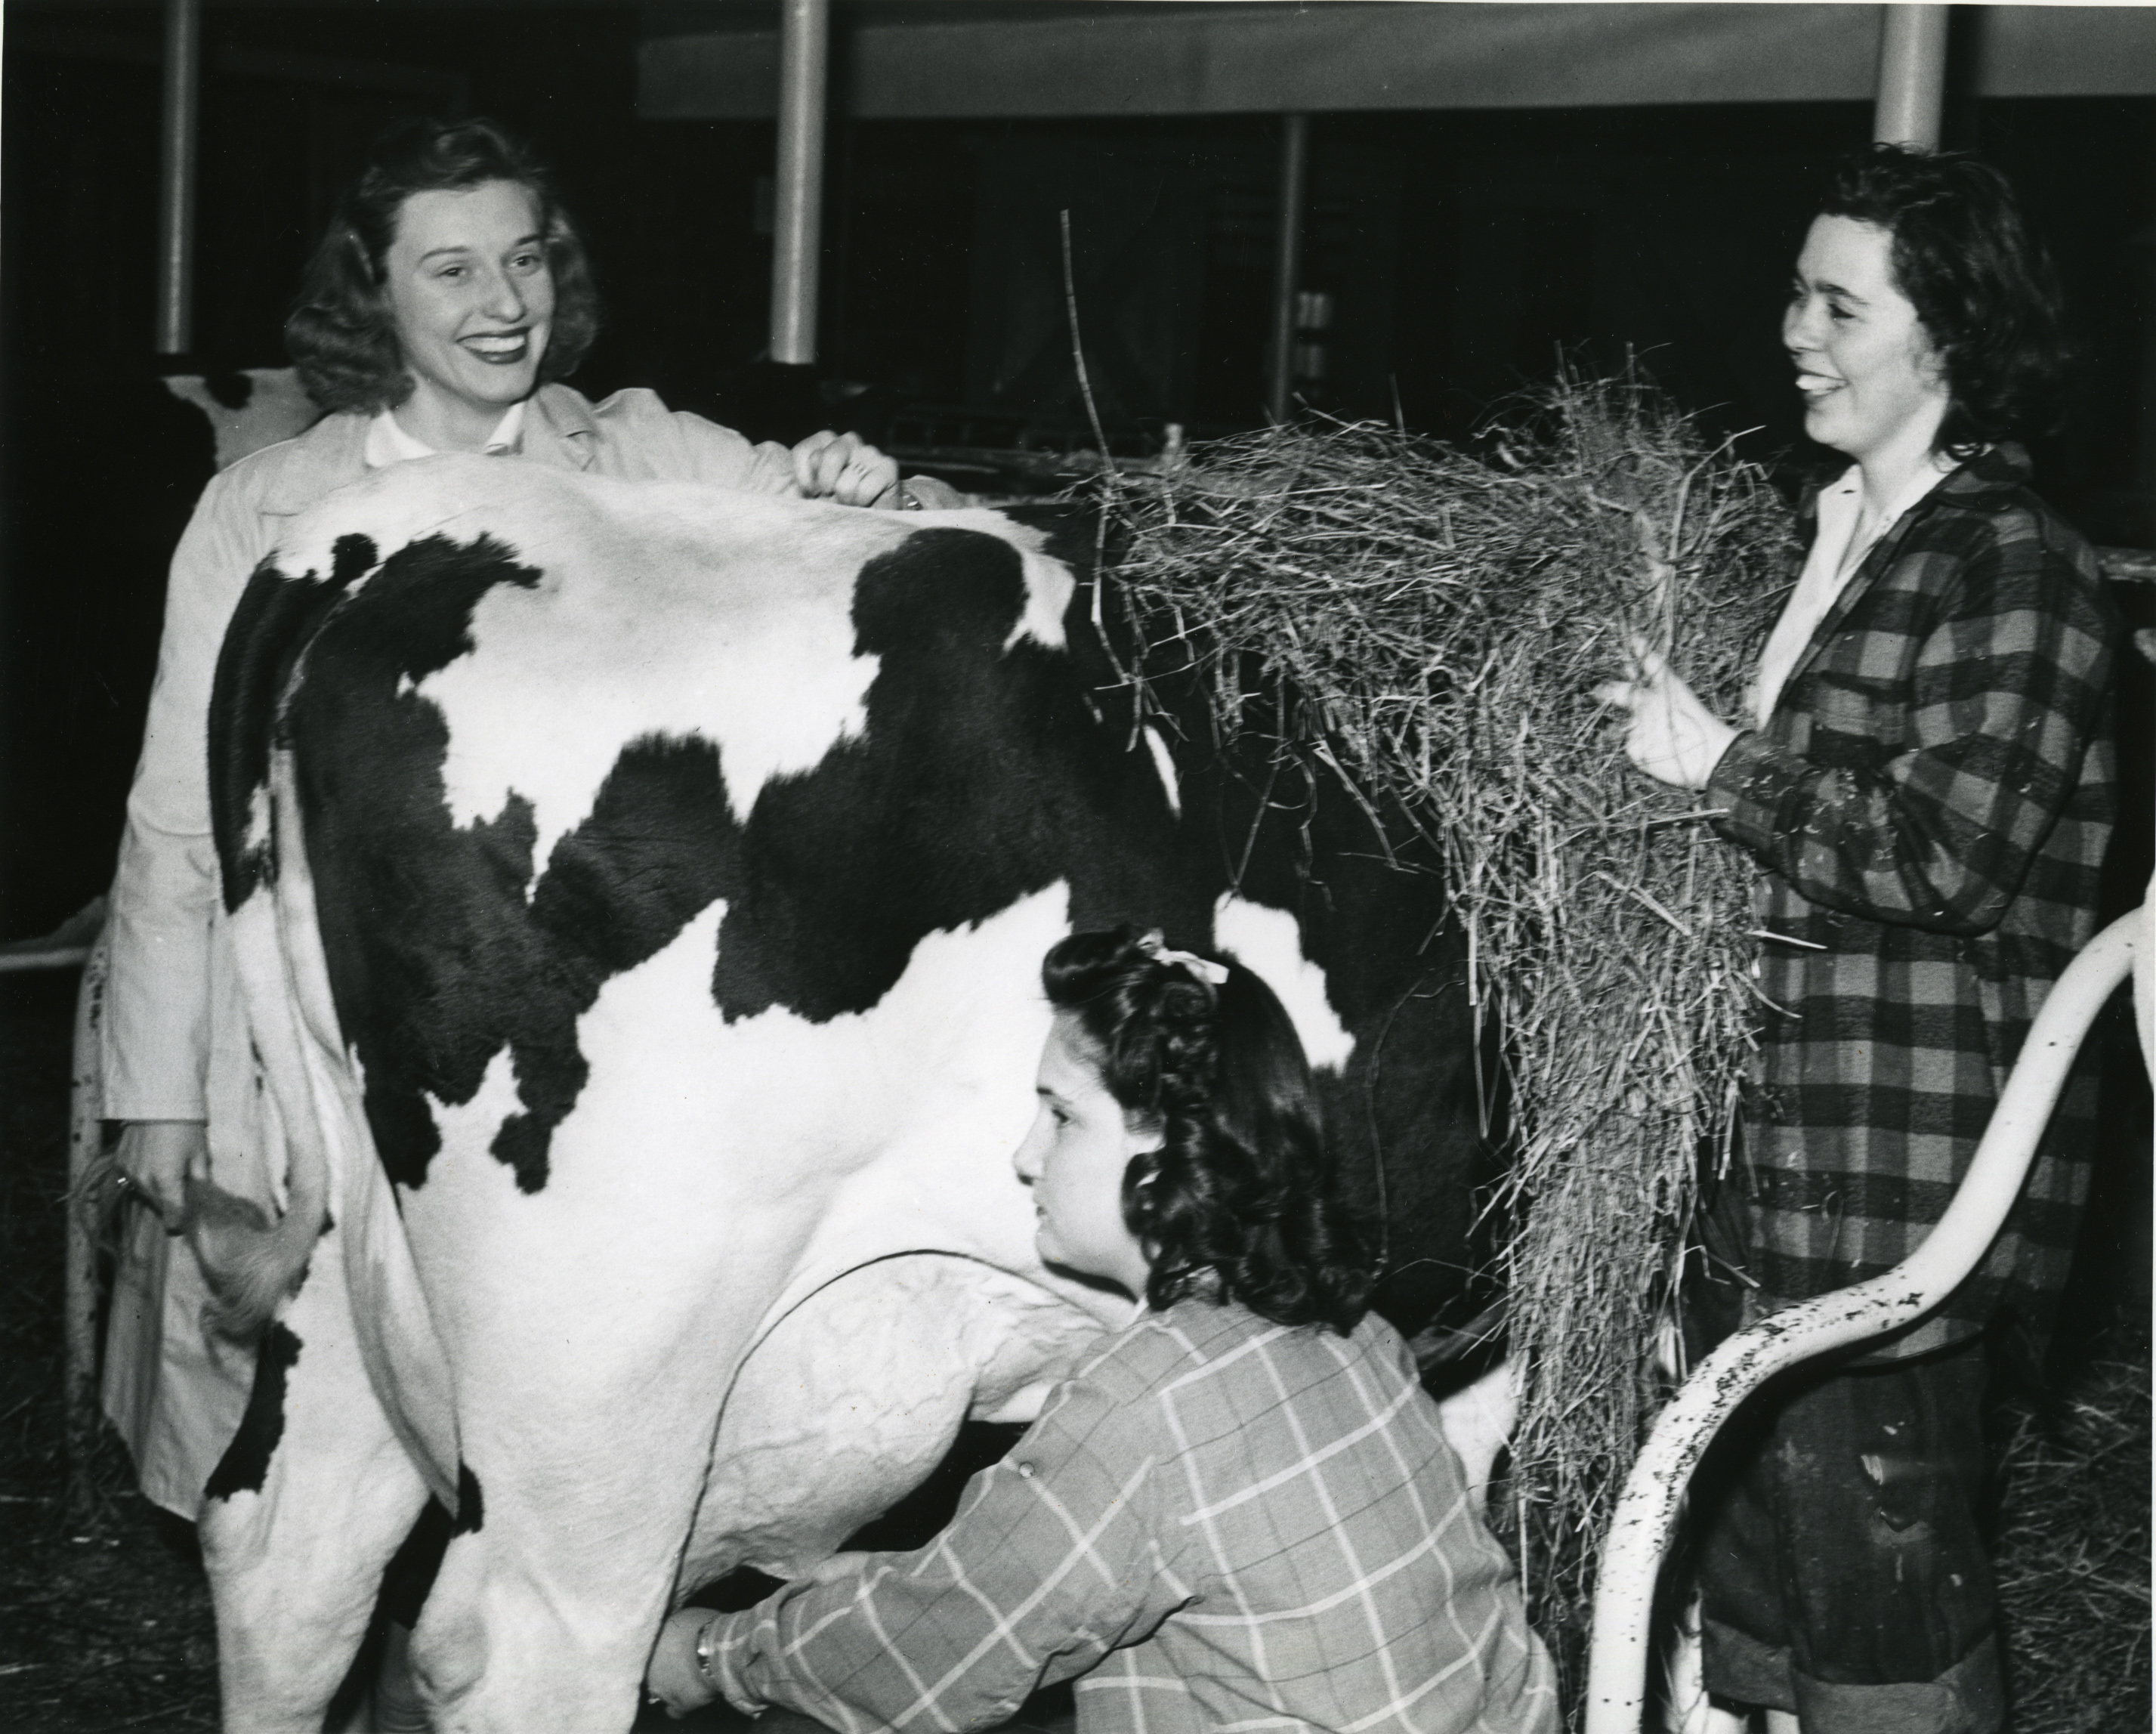 Ladies milking cow in barn.